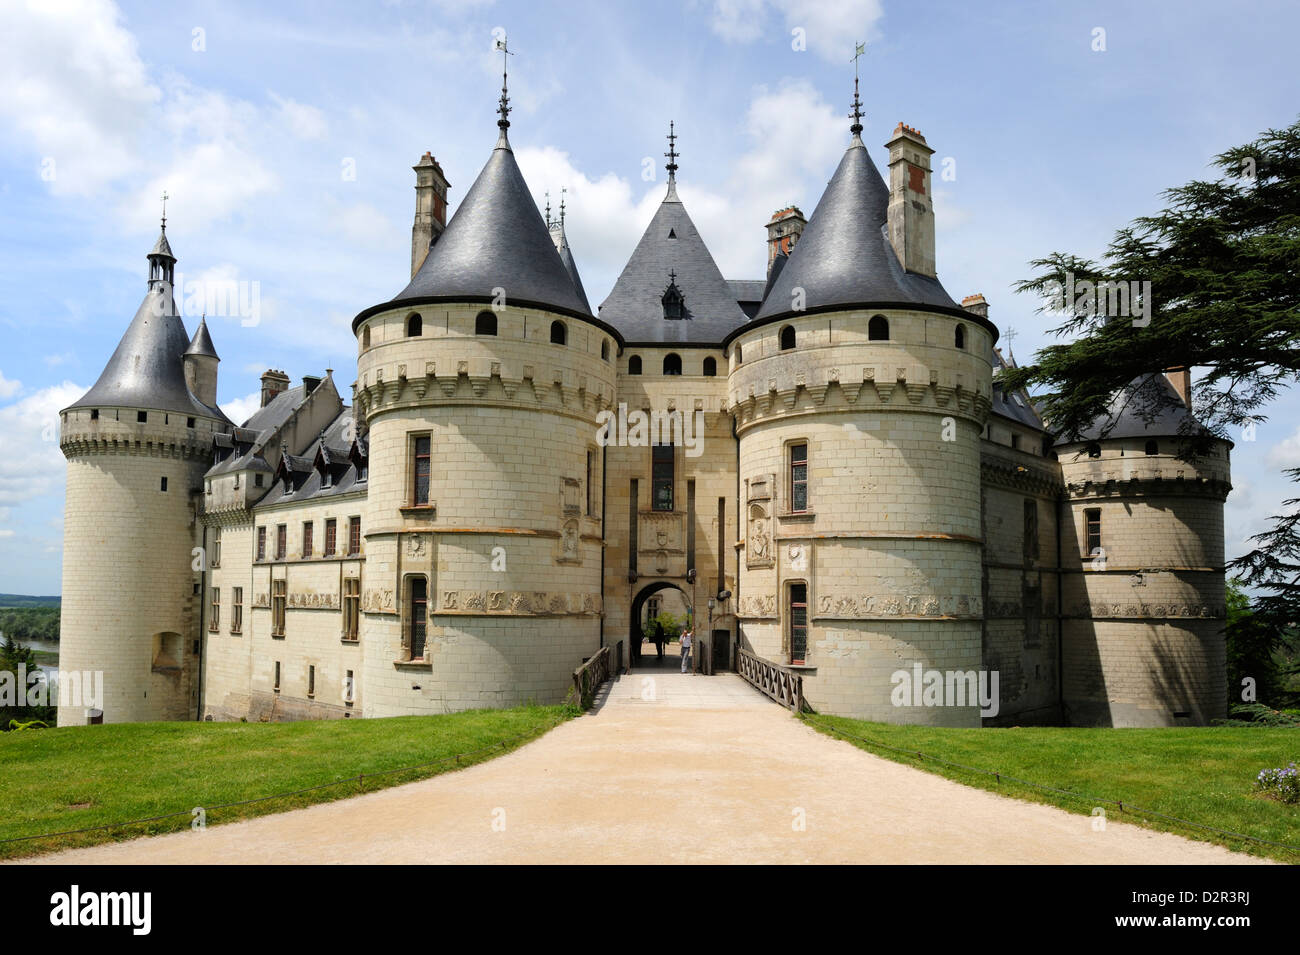 Chateau de Chaumont, Chaumont Sur Loire, Loir-et-Cher, Loire Valley, Centre, France, Europe Stock Photo